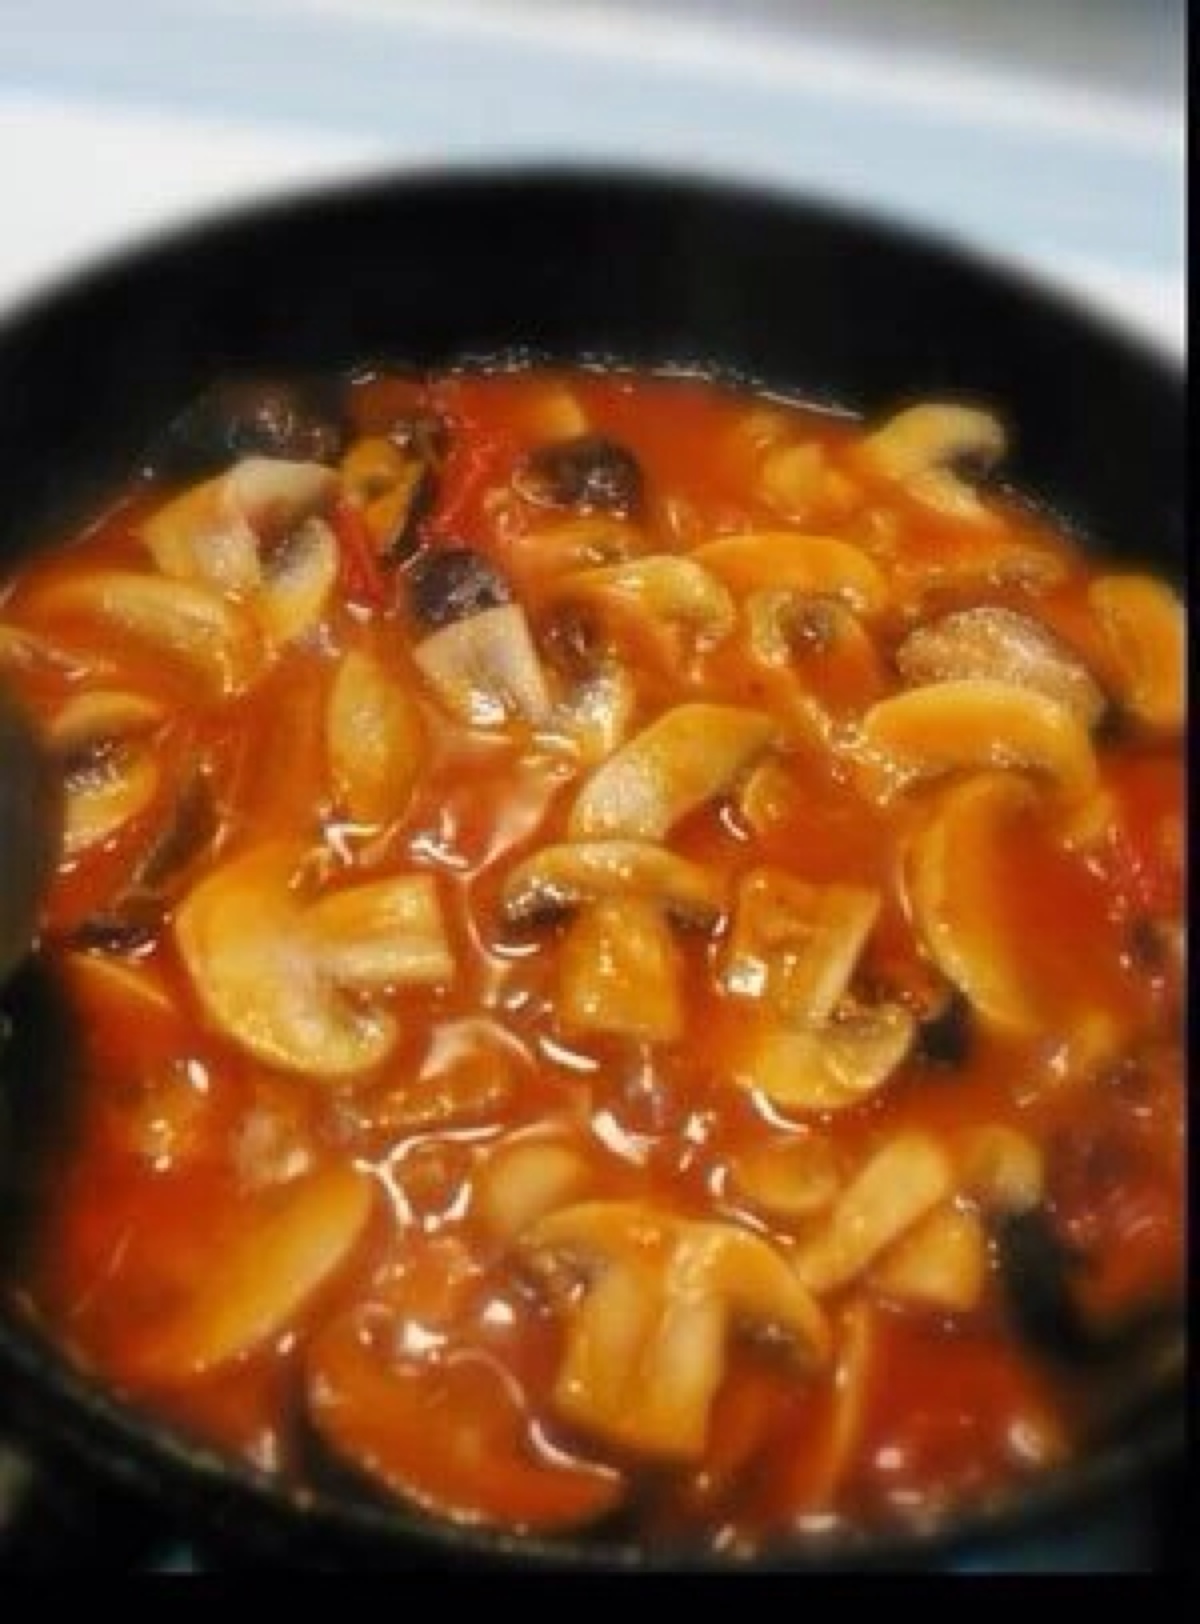 茄汁蘑菇 原料:蘑菇,番茄酱,白醋,糖,酱油,薄芡汁,鸡精 做法 1,锅中